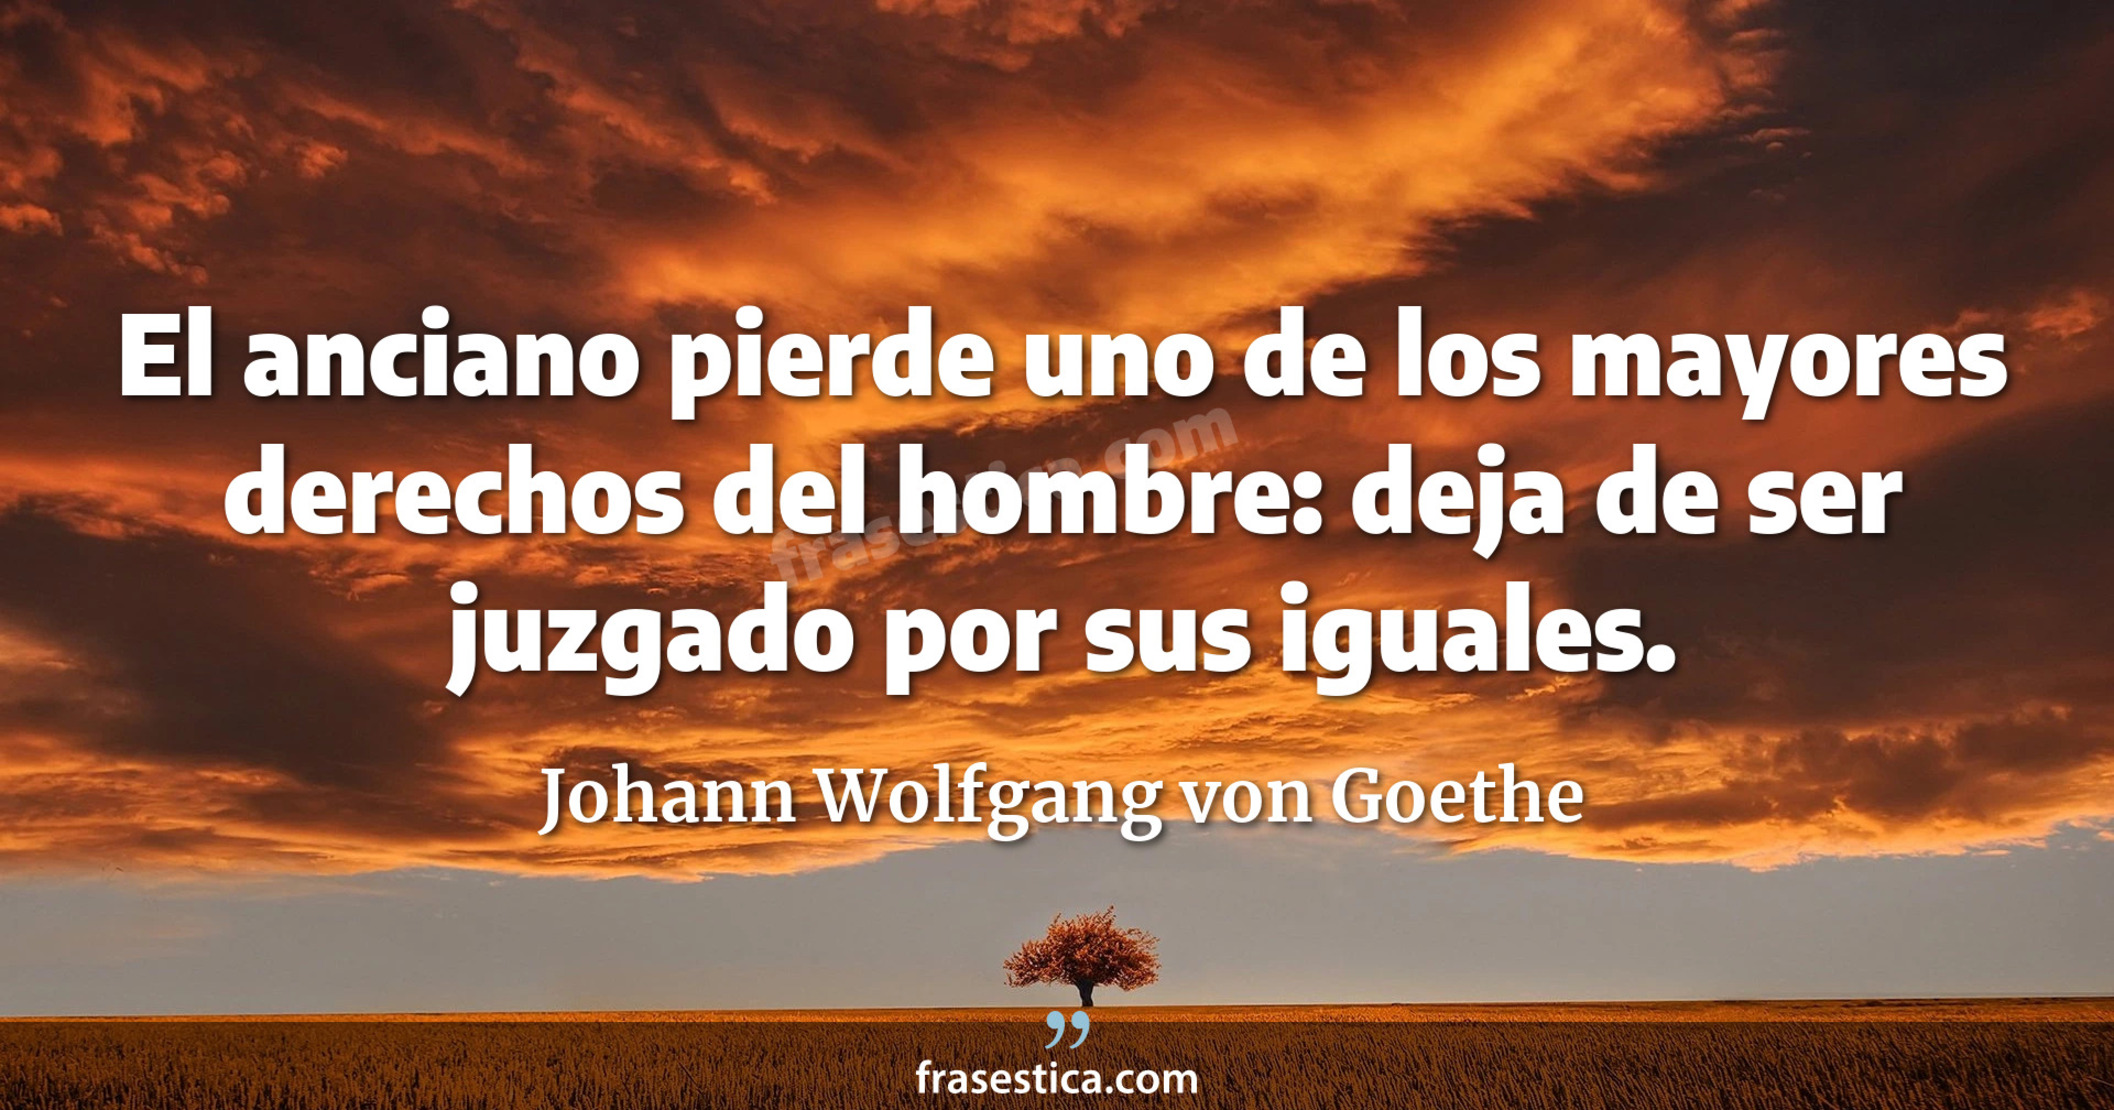 El anciano pierde uno de los mayores derechos del hombre: deja de ser juzgado por sus iguales. - Johann Wolfgang von Goethe